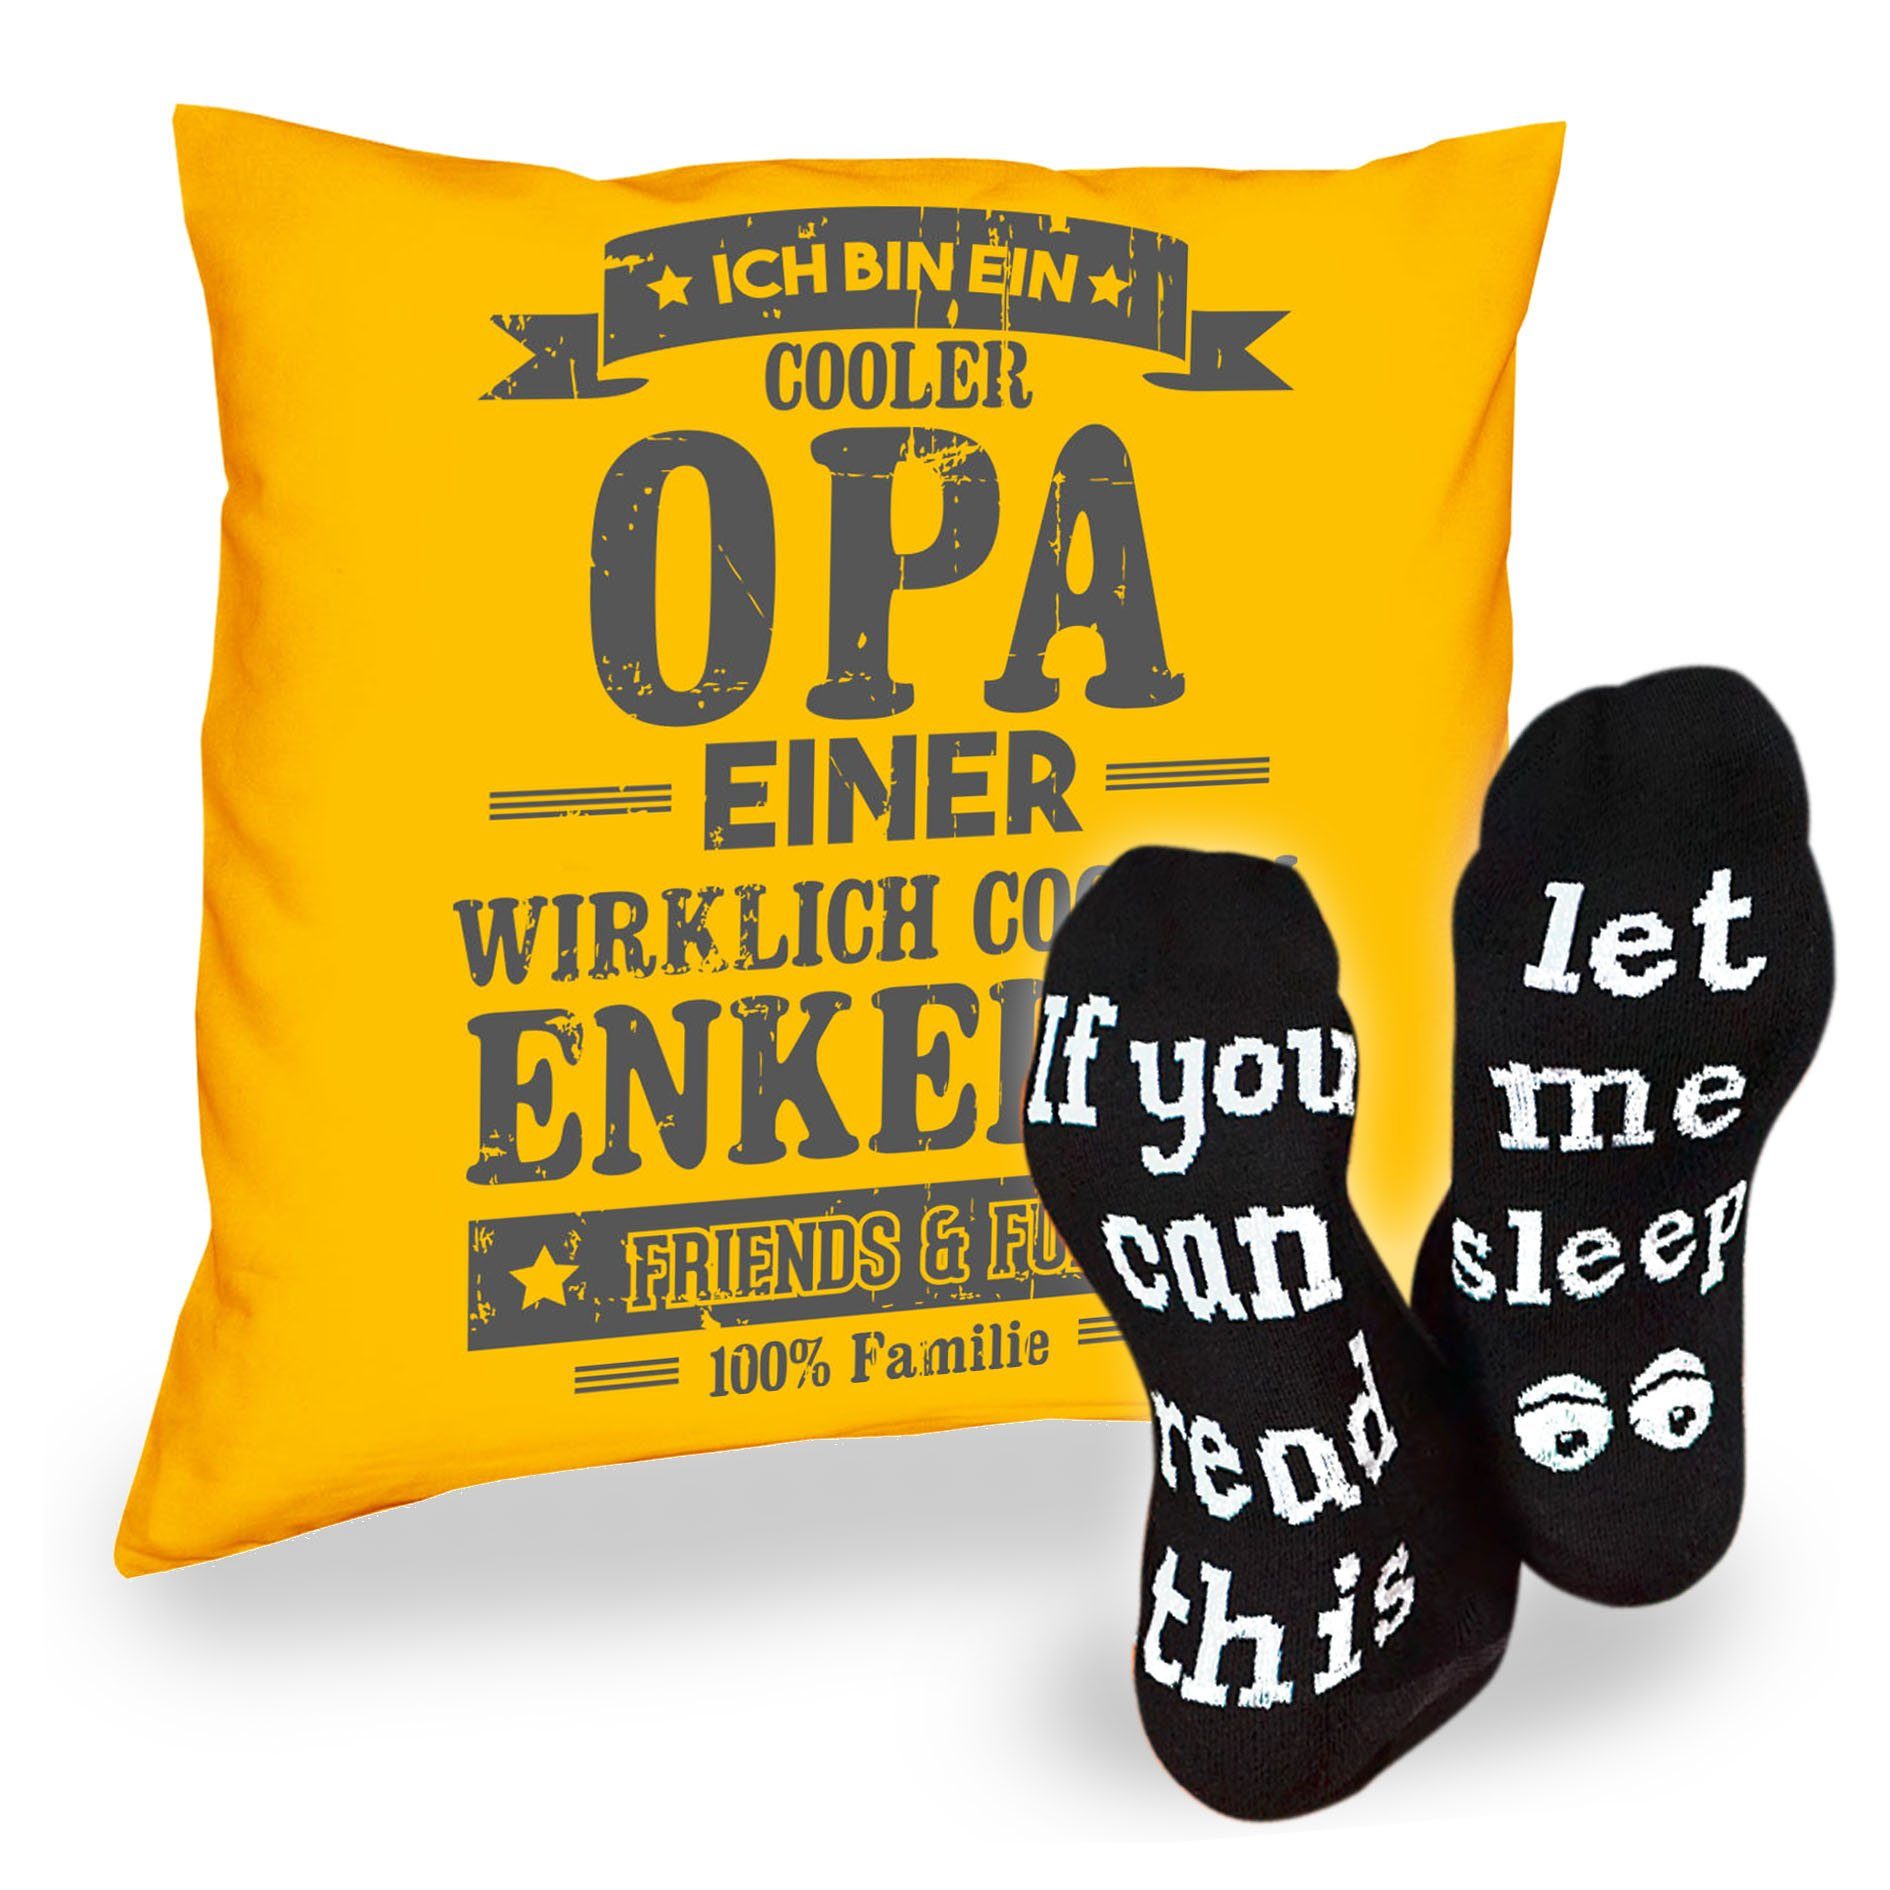 Soreso® Dekokissen Kissen Cooler Opa einer Enkelin & Sprüche Socken Sleep, Geschenkidee Weihnachtsgeschenk gelb